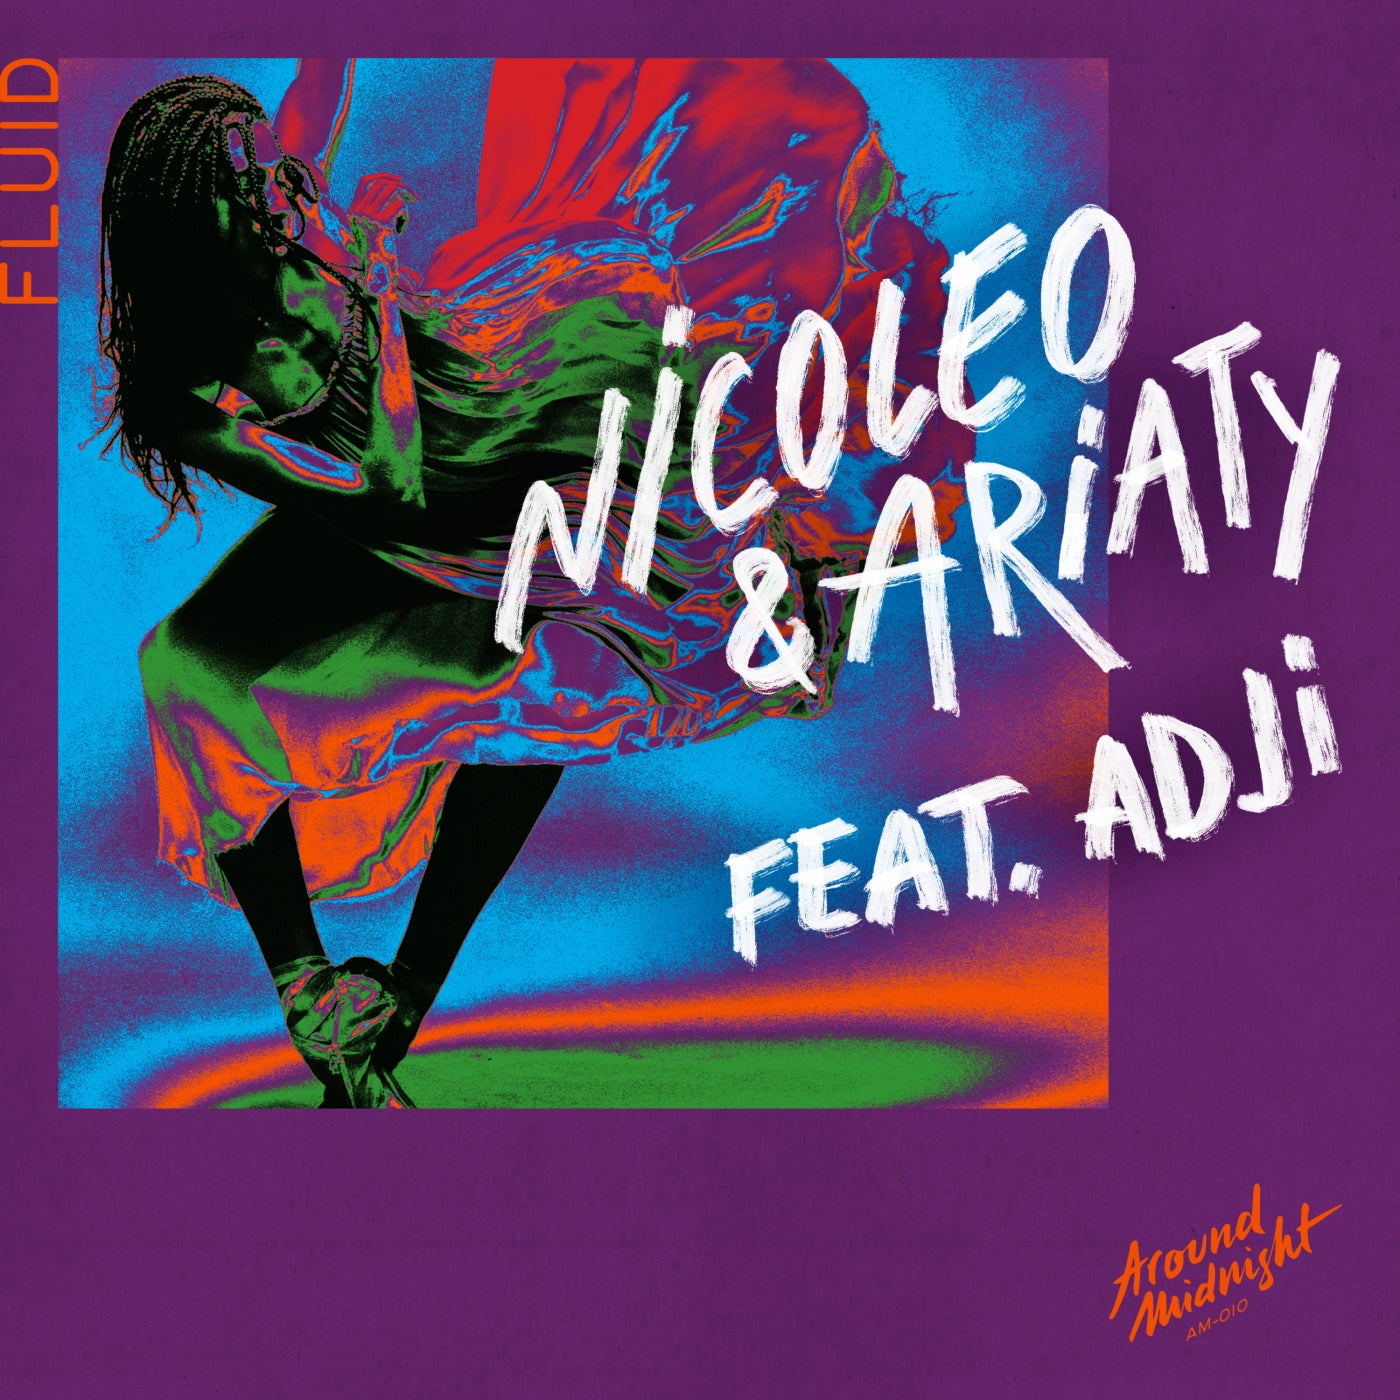 Cover - Nicoleo, Ariaty - Fluid feat. Adji Cissoko (Original Mix)